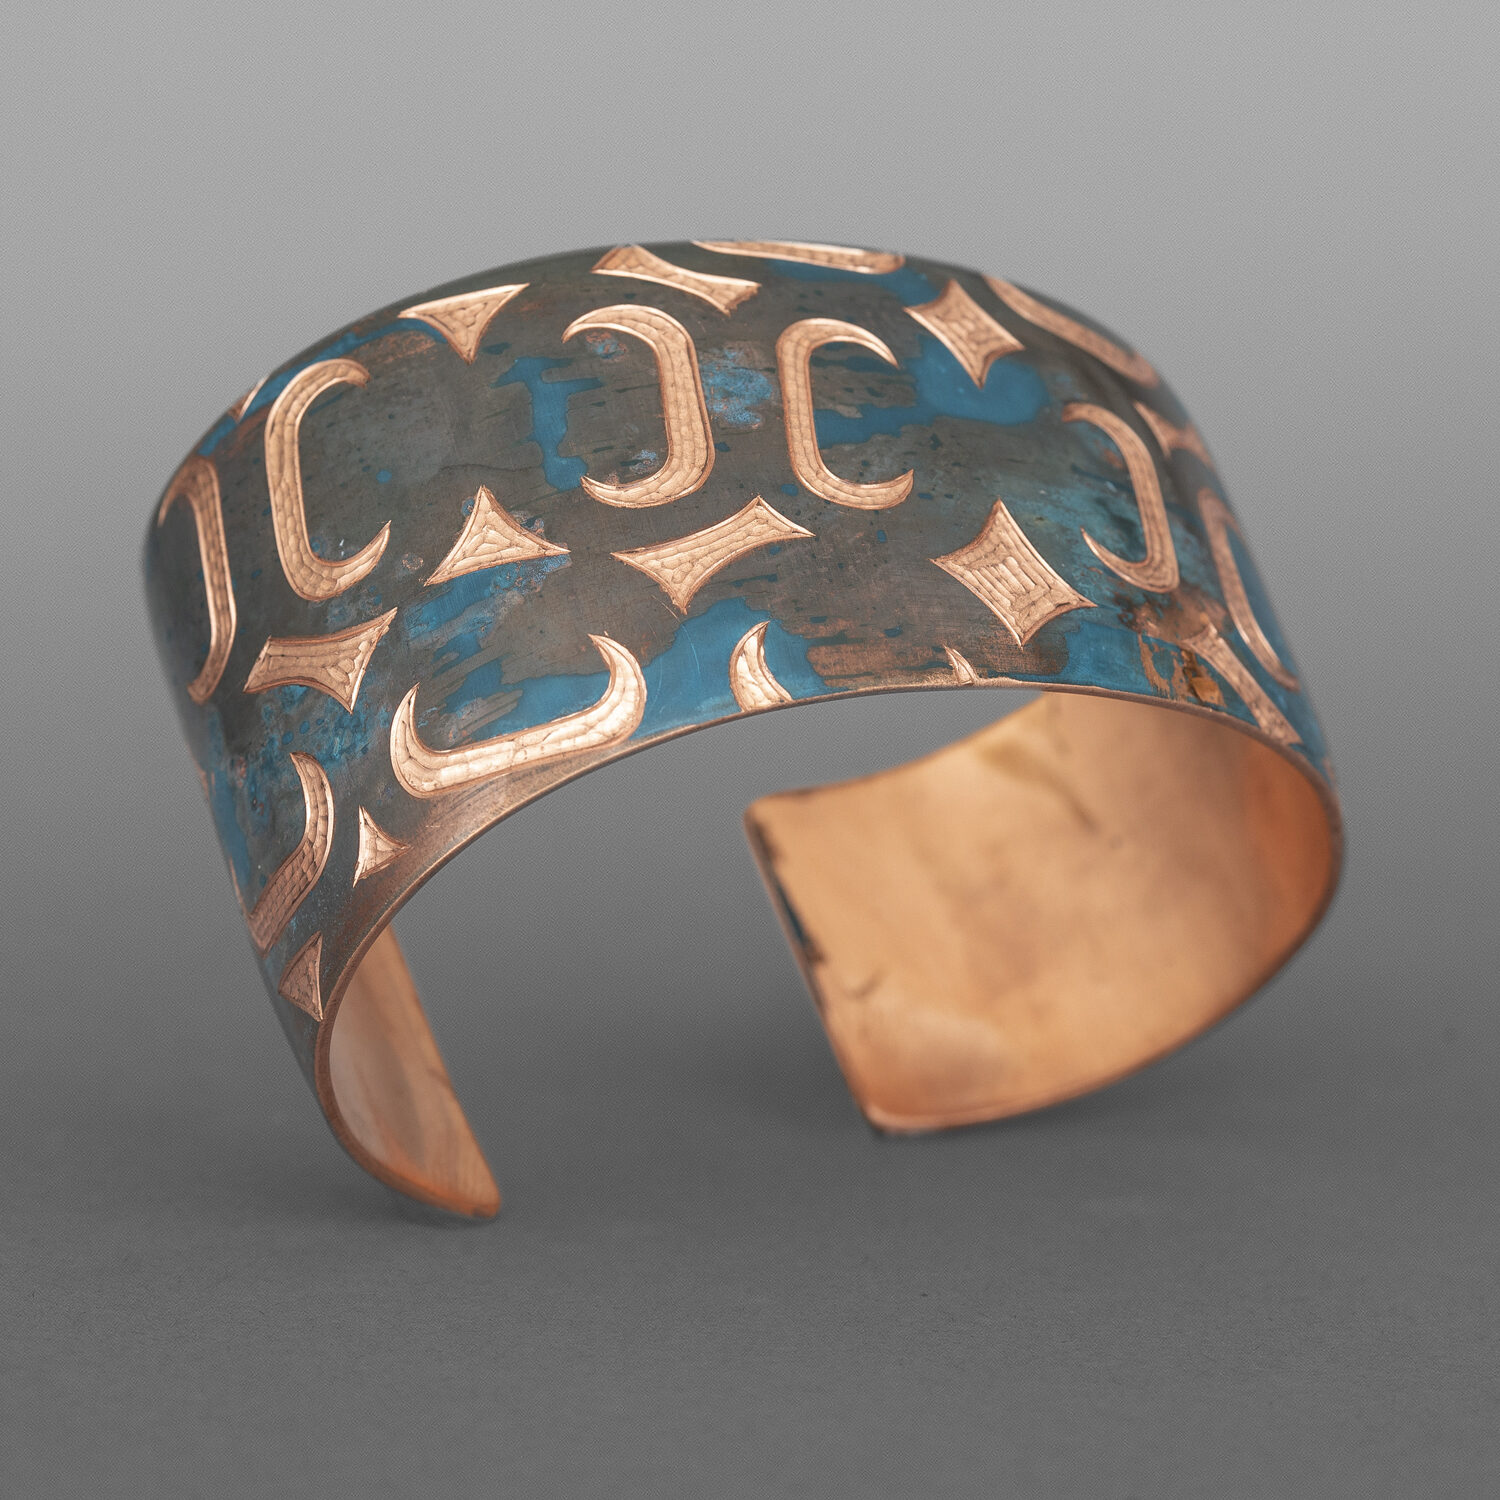 Monogrammed Ovoid Bracelet
Jennifer Younger
Tlingit
Patinated copper
6"x 1½”
$550